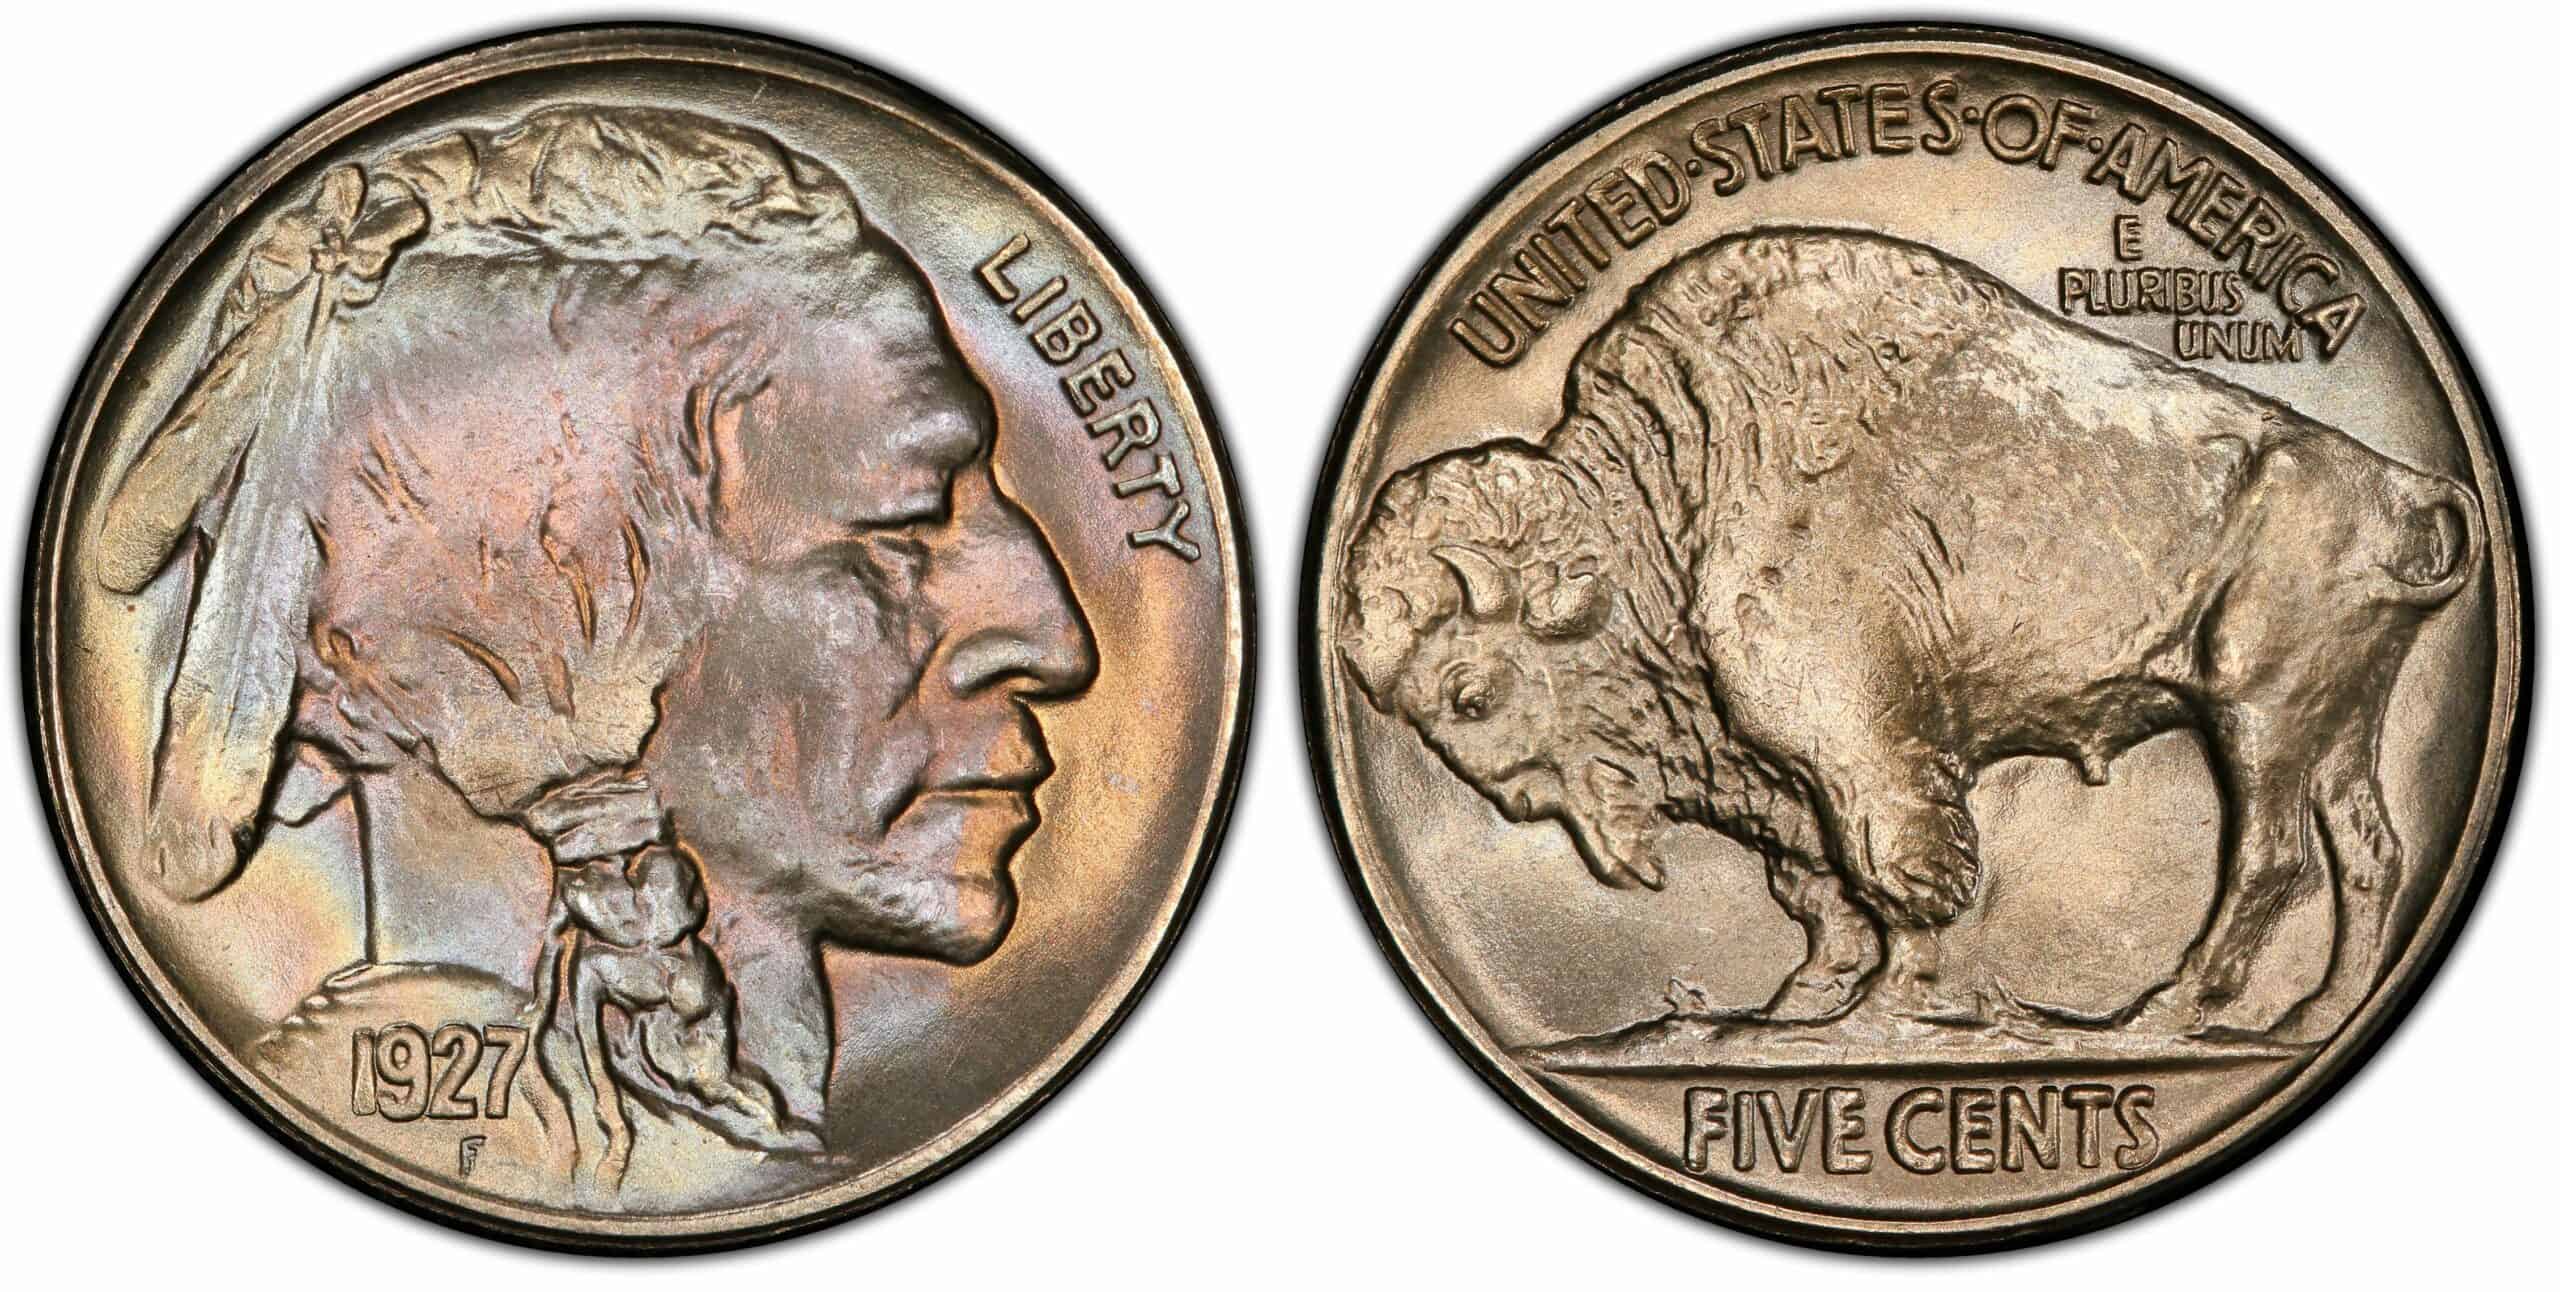 The 1927 Buffalo Nickel Coin History